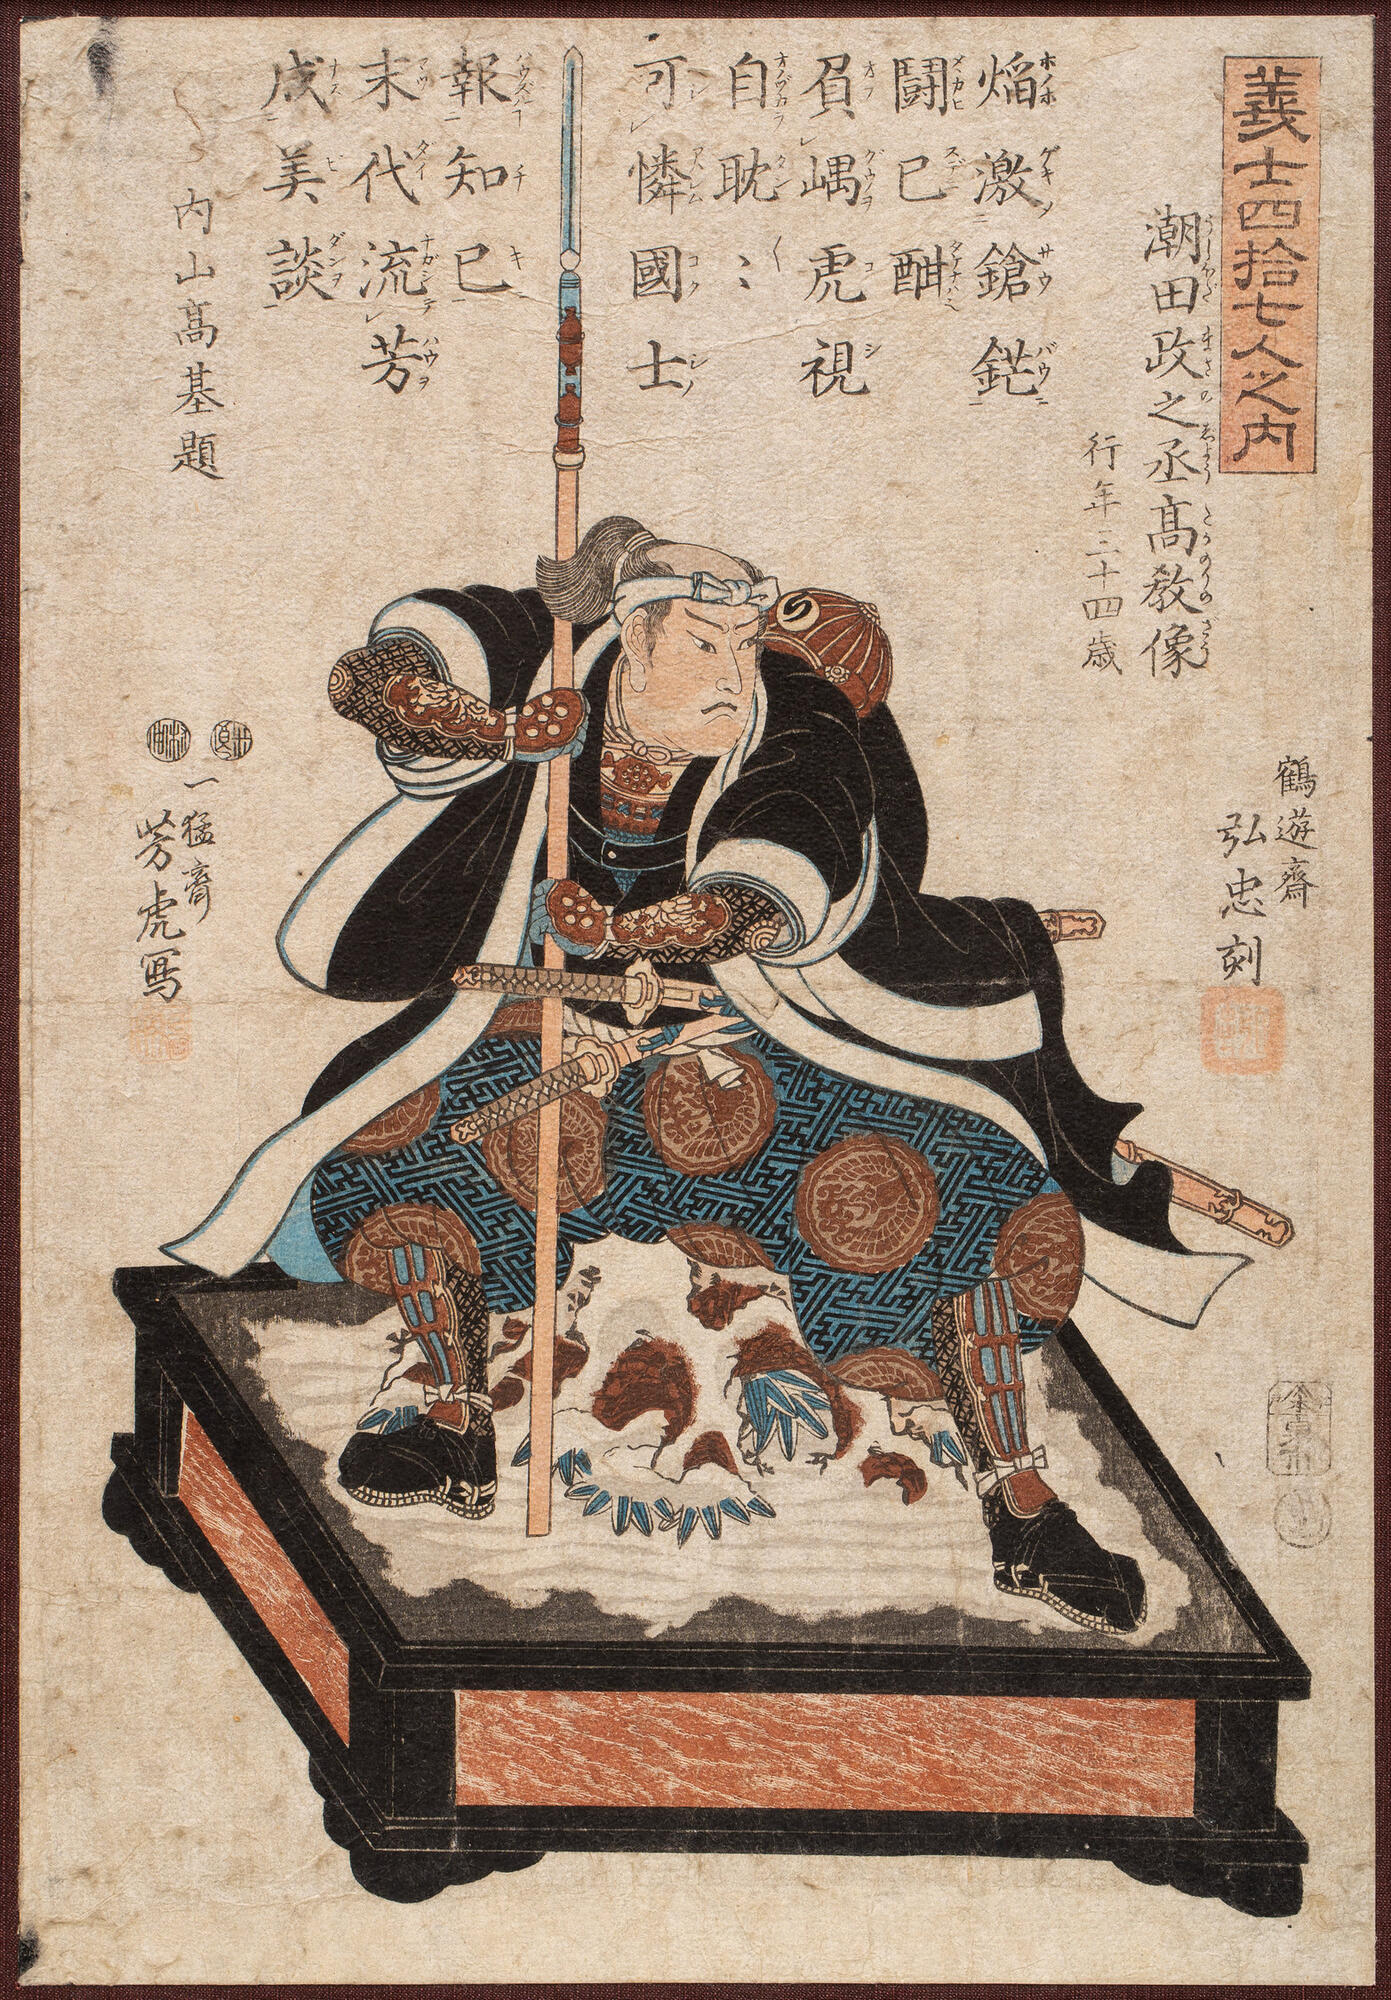 流政之 The Life of Samurai Artist-